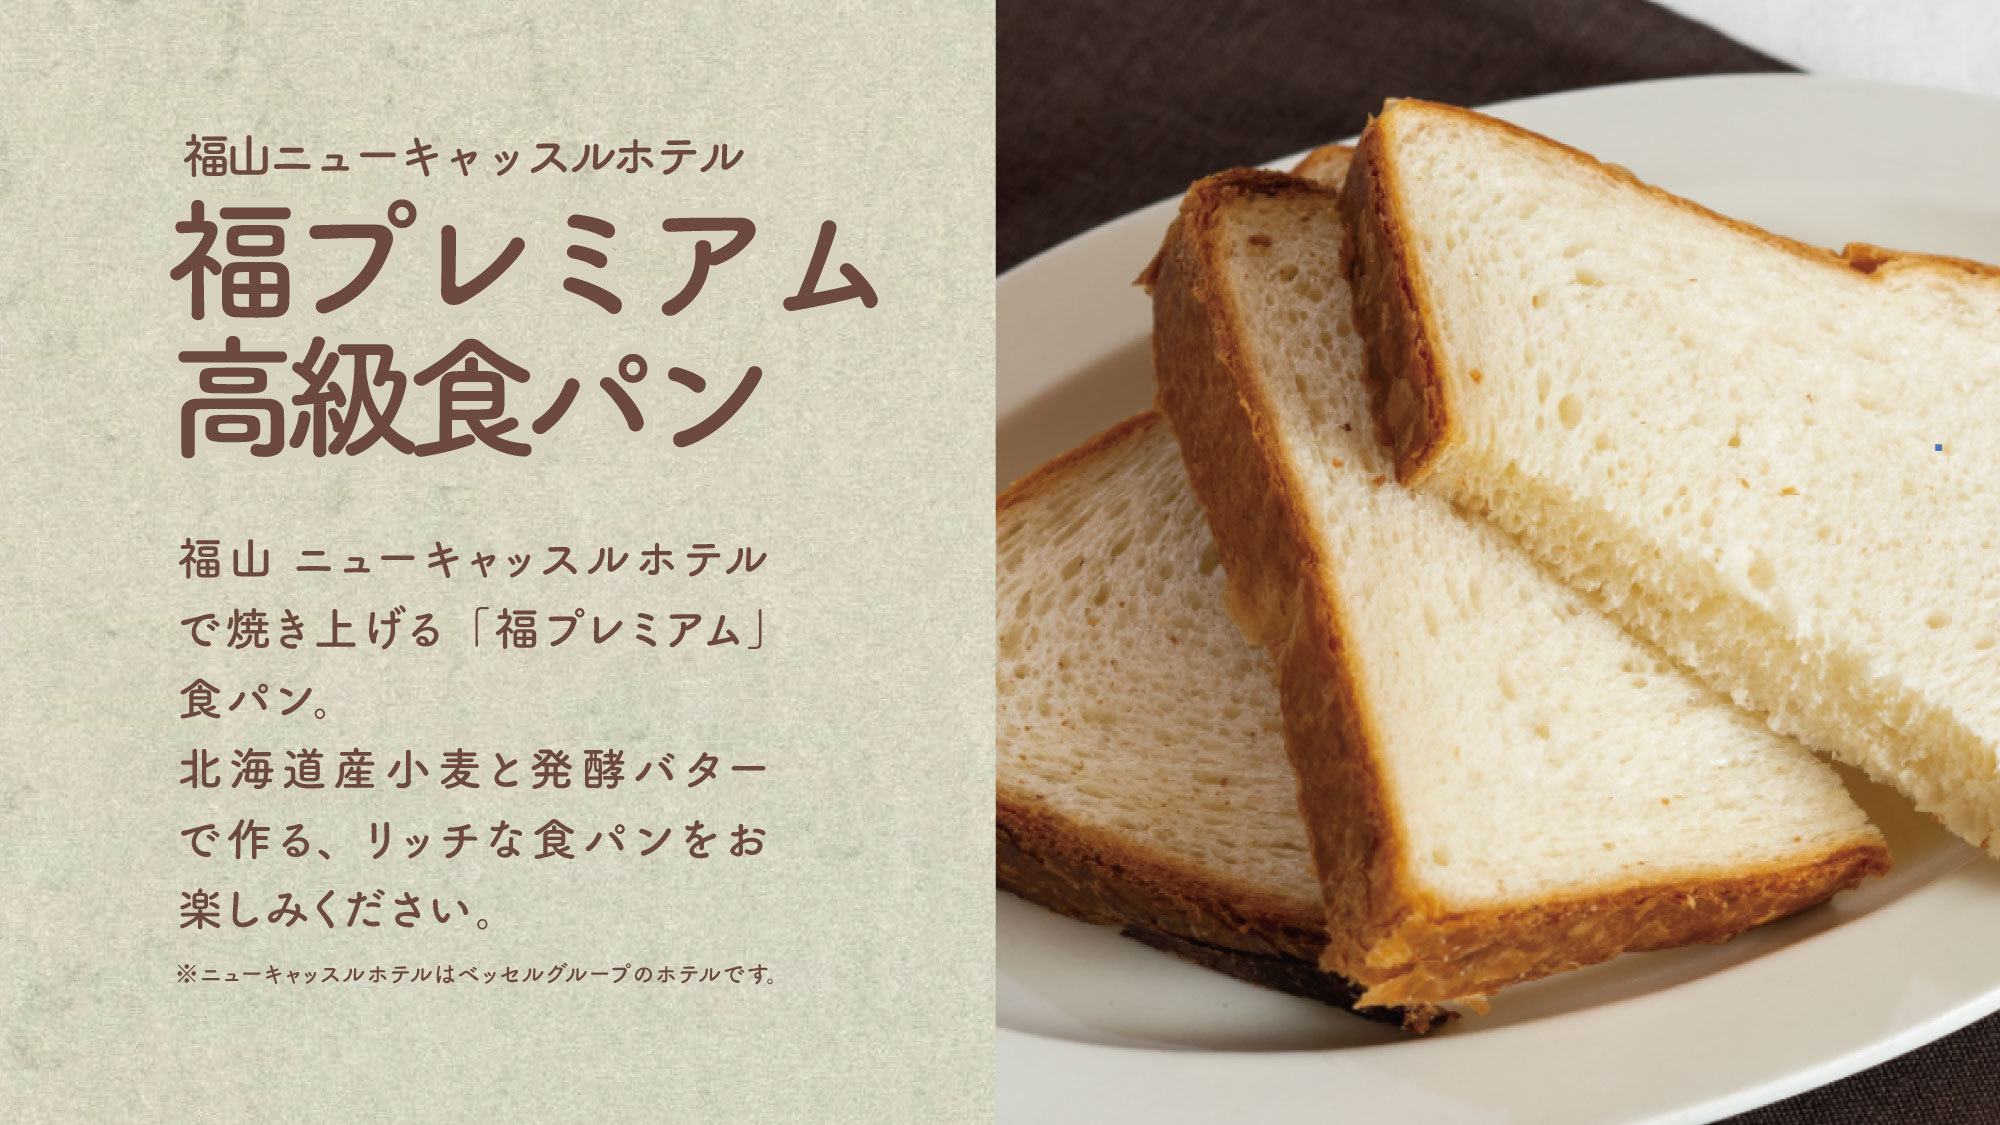 【福プレミアム高級食パン】系列ホテルで焼きあげる北海道産小麦と発酵バターで作るリッチな食パンです。